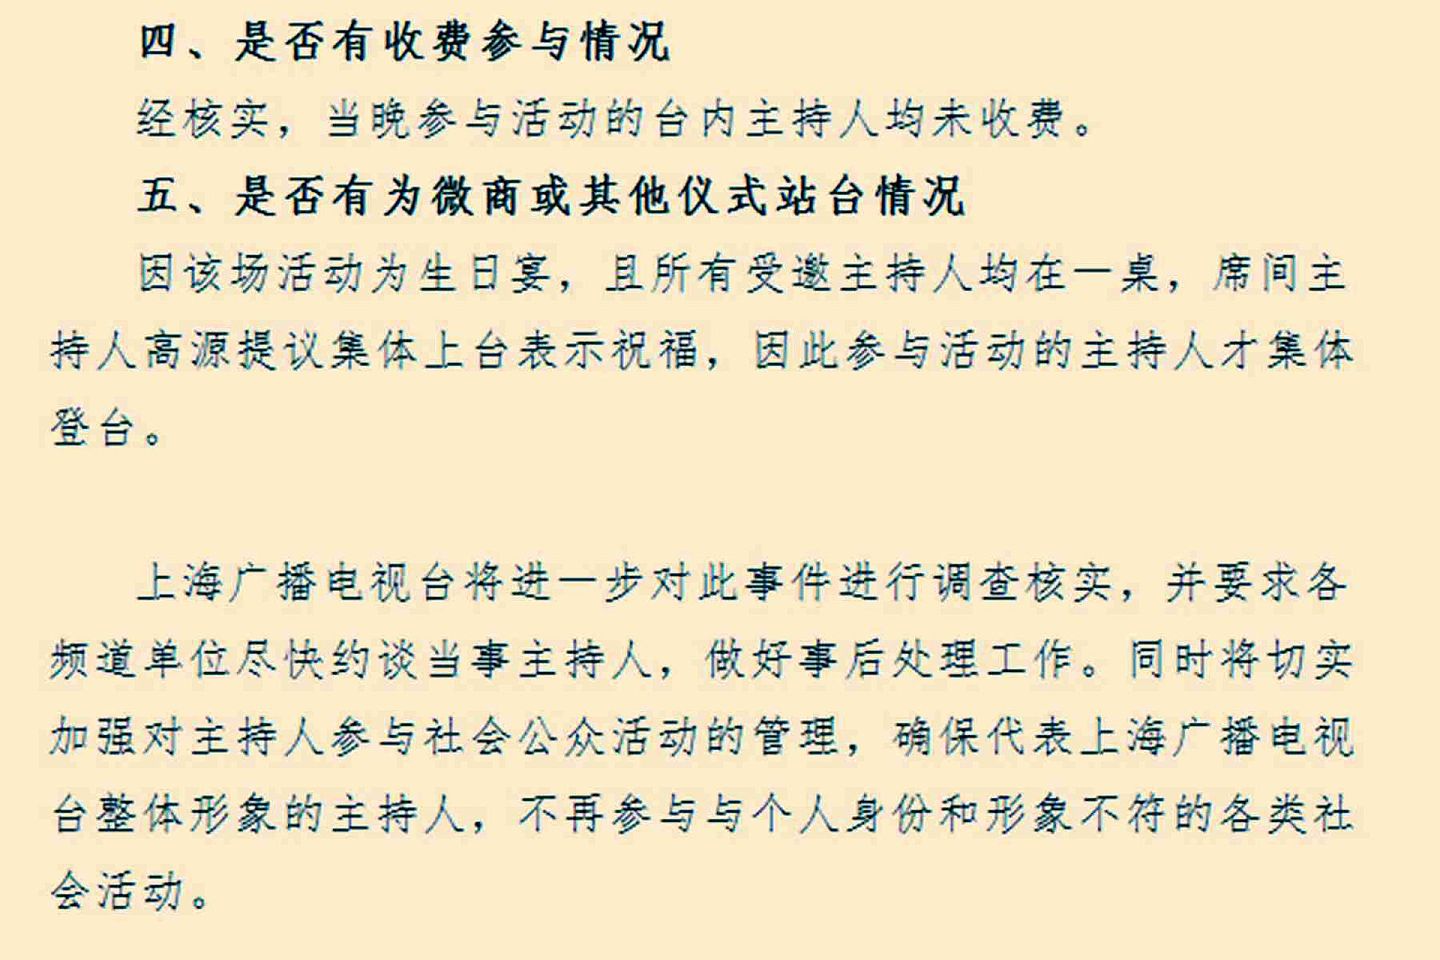 上海广播电视台表示将对此事进行进一步调查核实。（微博@风吹水面浪易平）